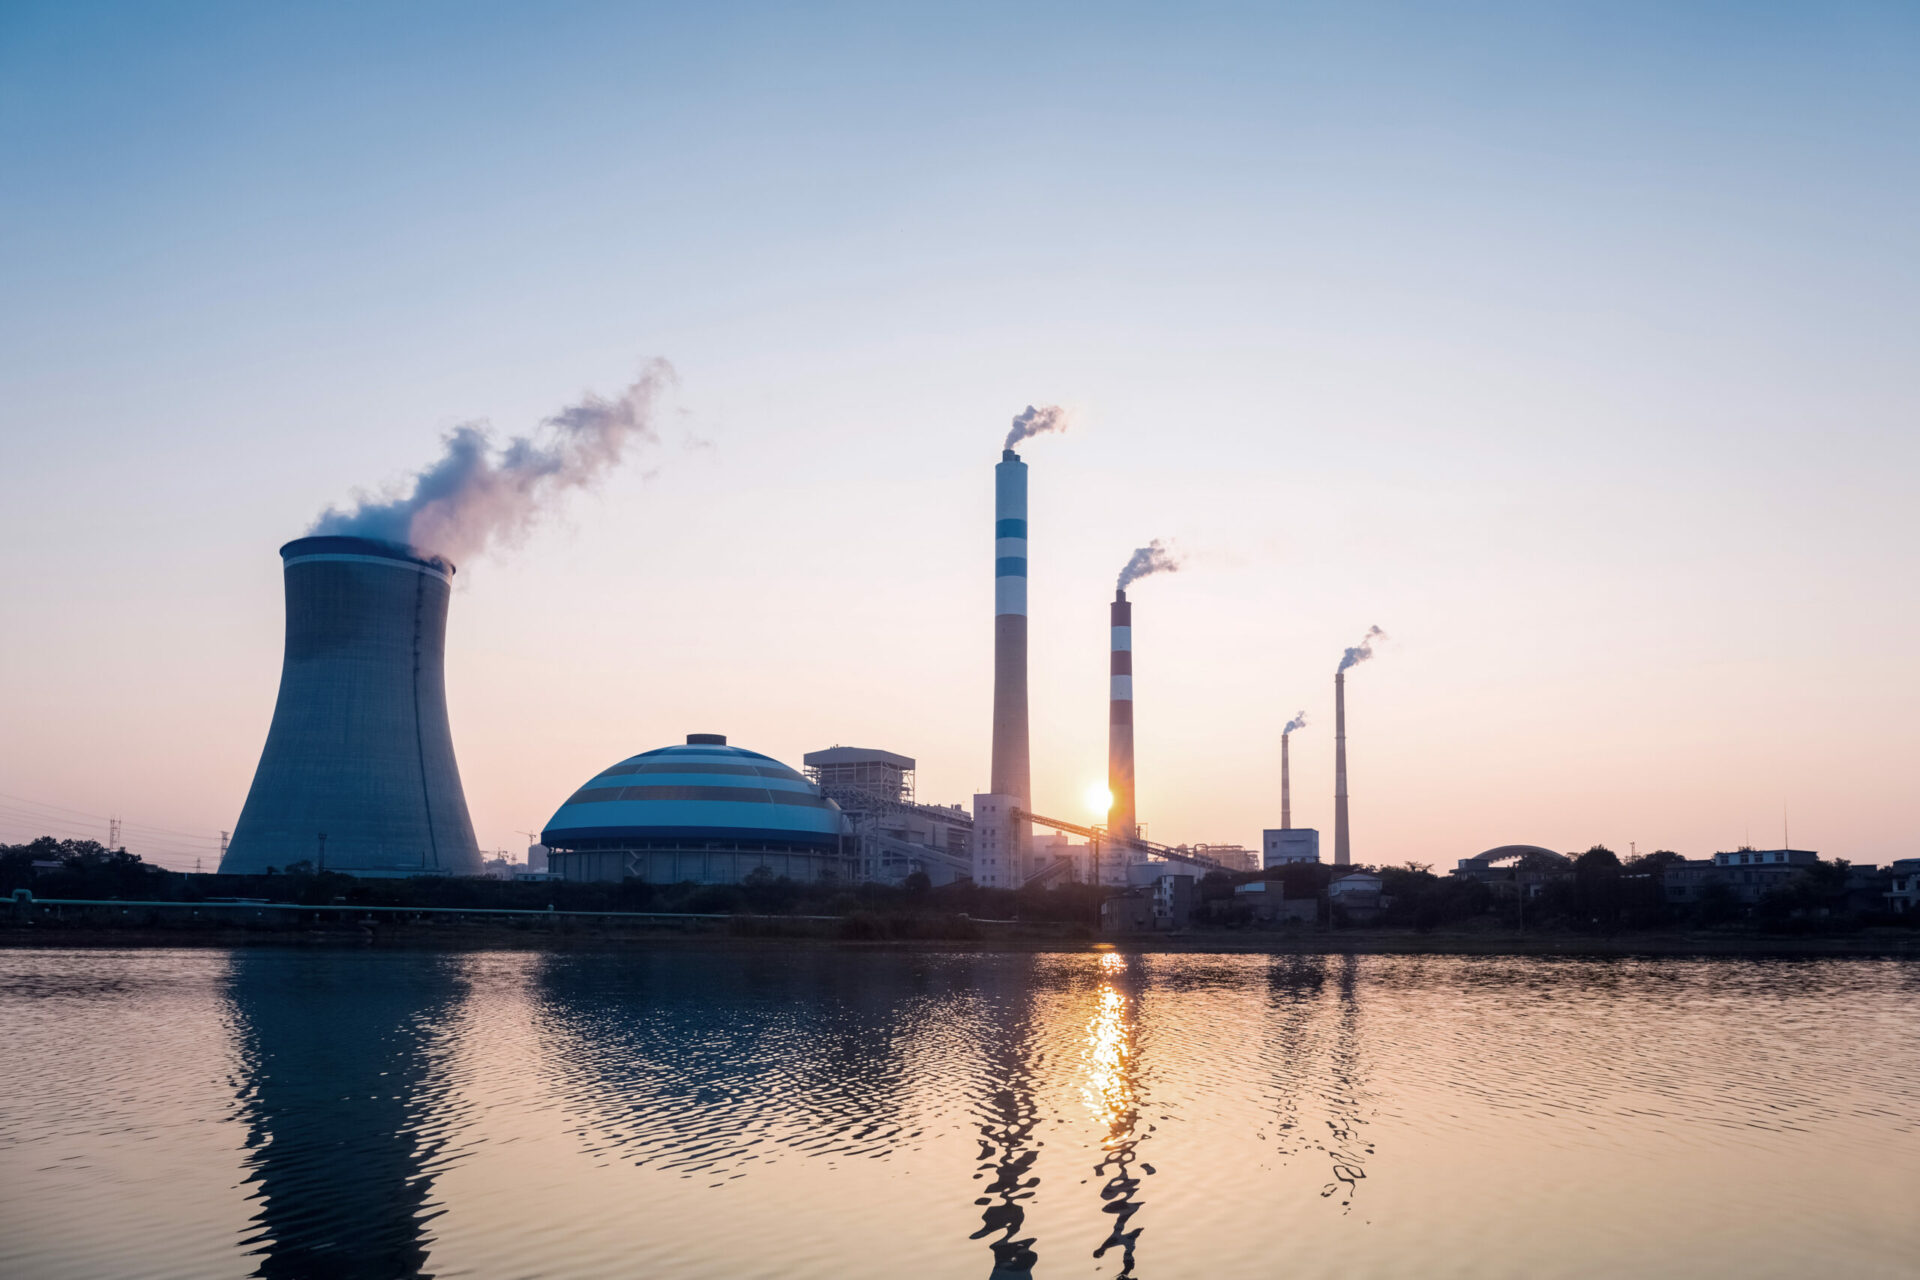 Miljöprövning och energiomställning – vad kom Miljöprövningsutredningen fram till?